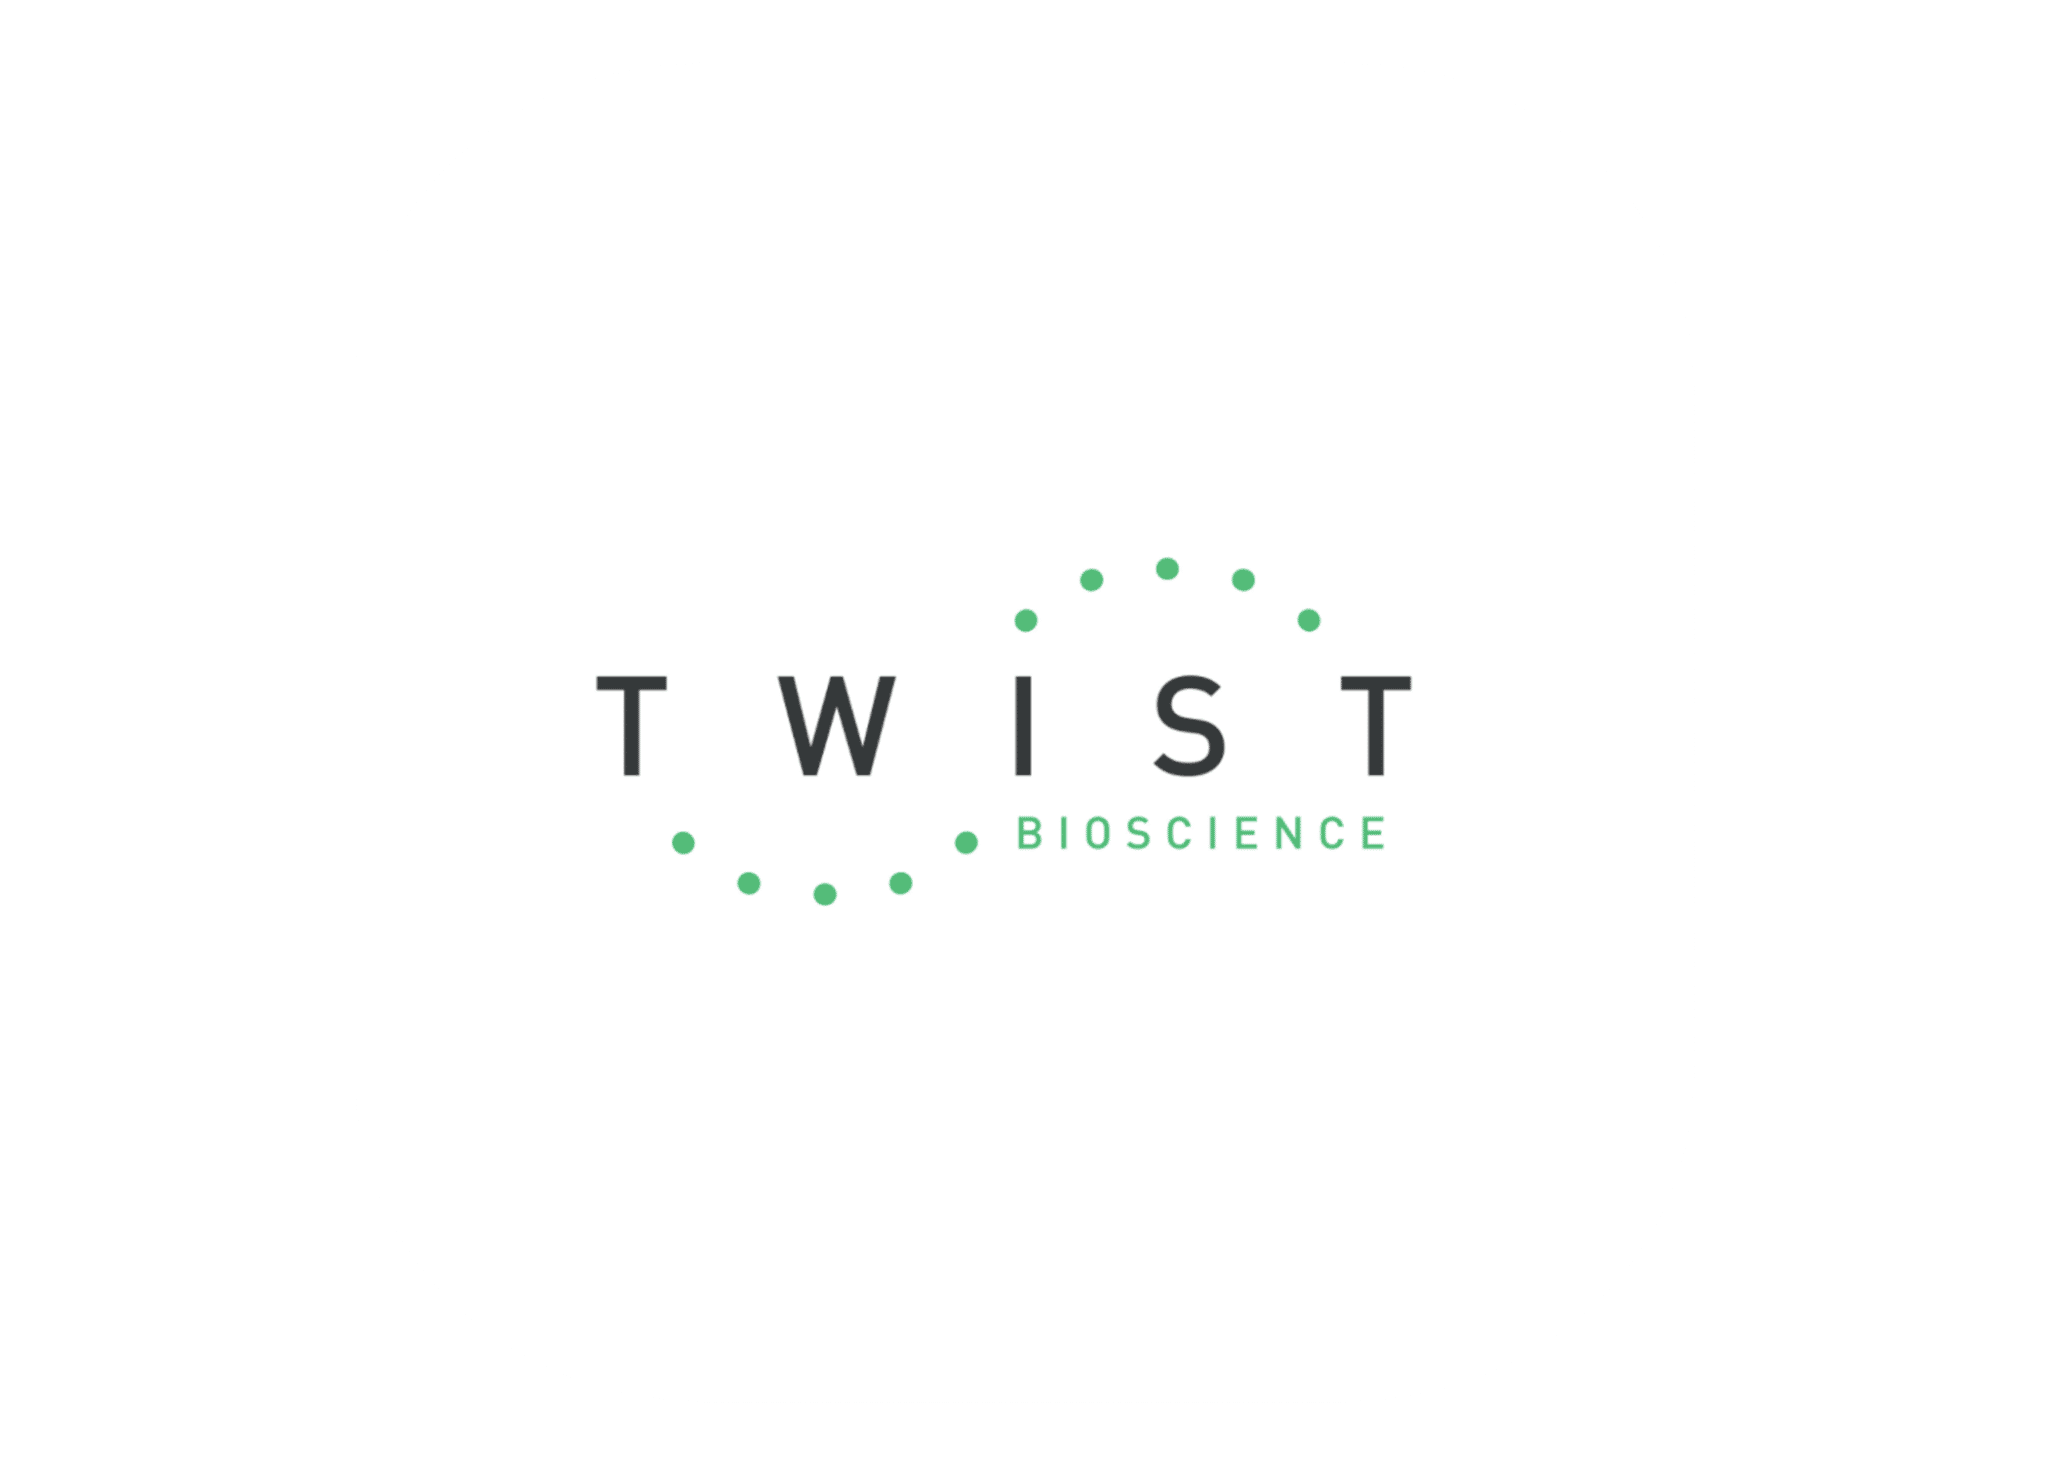 TwistBioscience